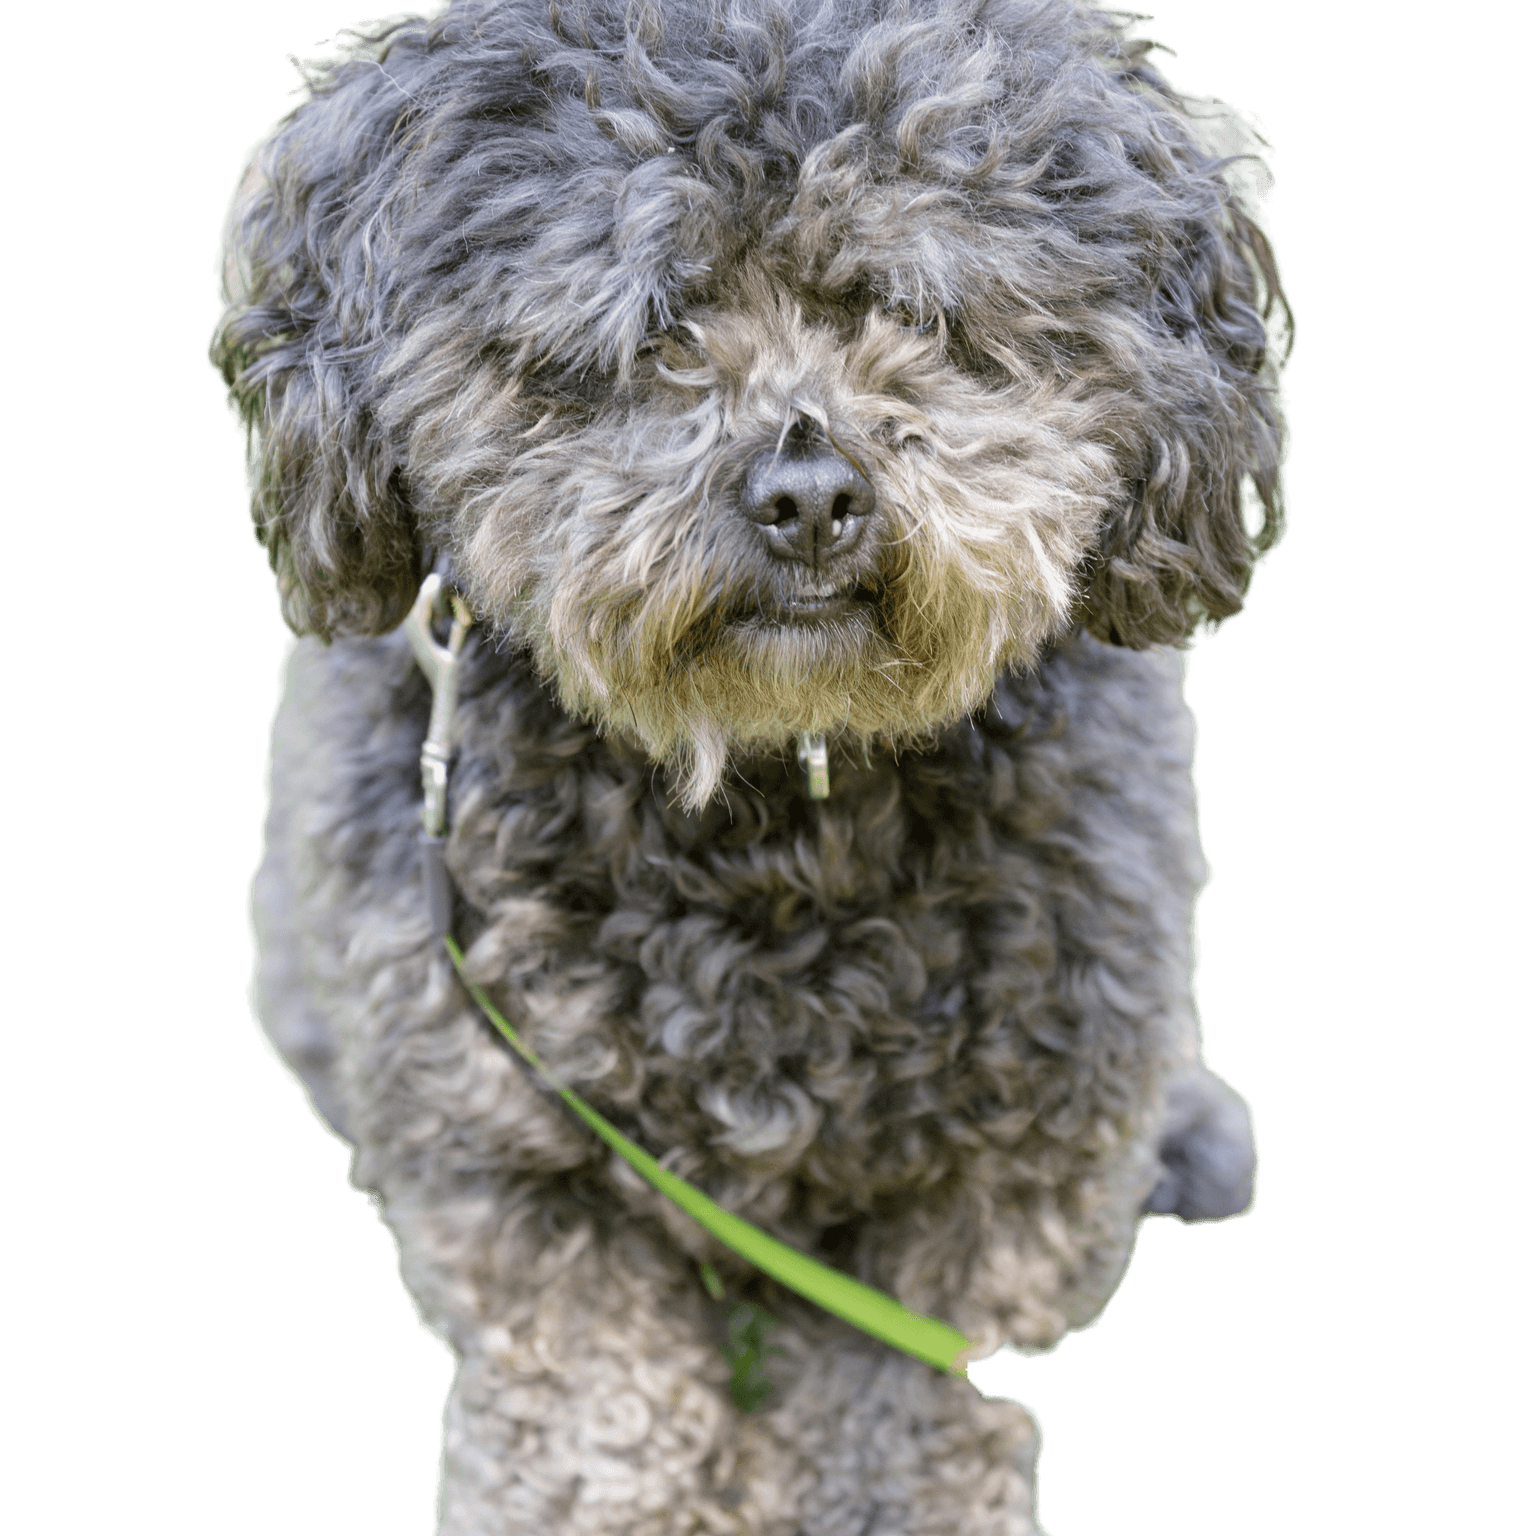 Bichon Pudel Mix Hund. Hundepark ohne Leine in Nordkalifornien.